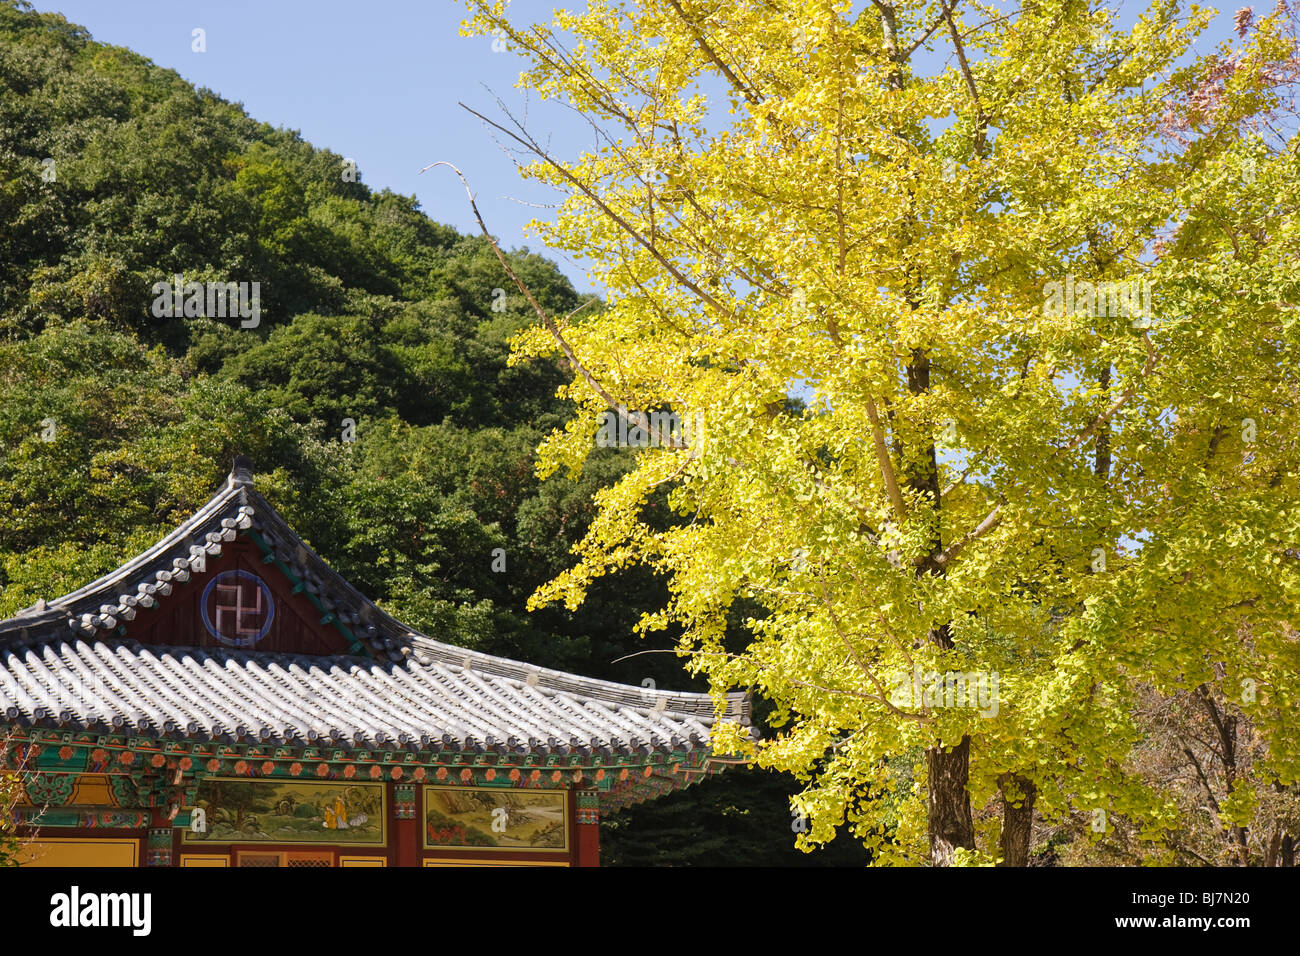 L'Shingeung Seoraksan-sa Temple toit et couleurs d'automne Banque D'Images